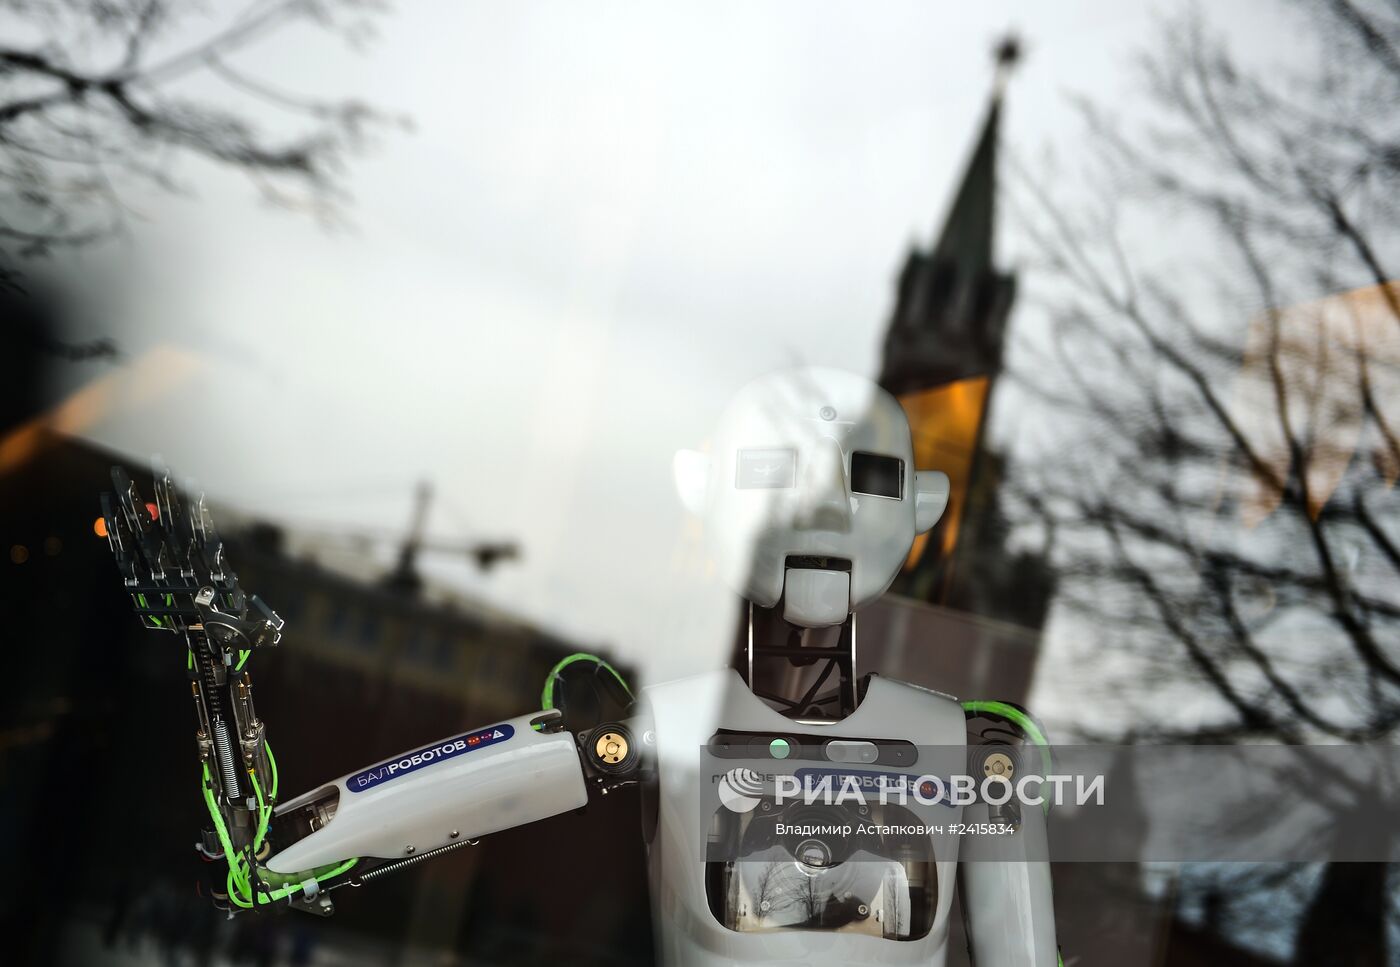 Демонстрация робота-гуманоида Теспиана - участника Бала Роботов в Москве